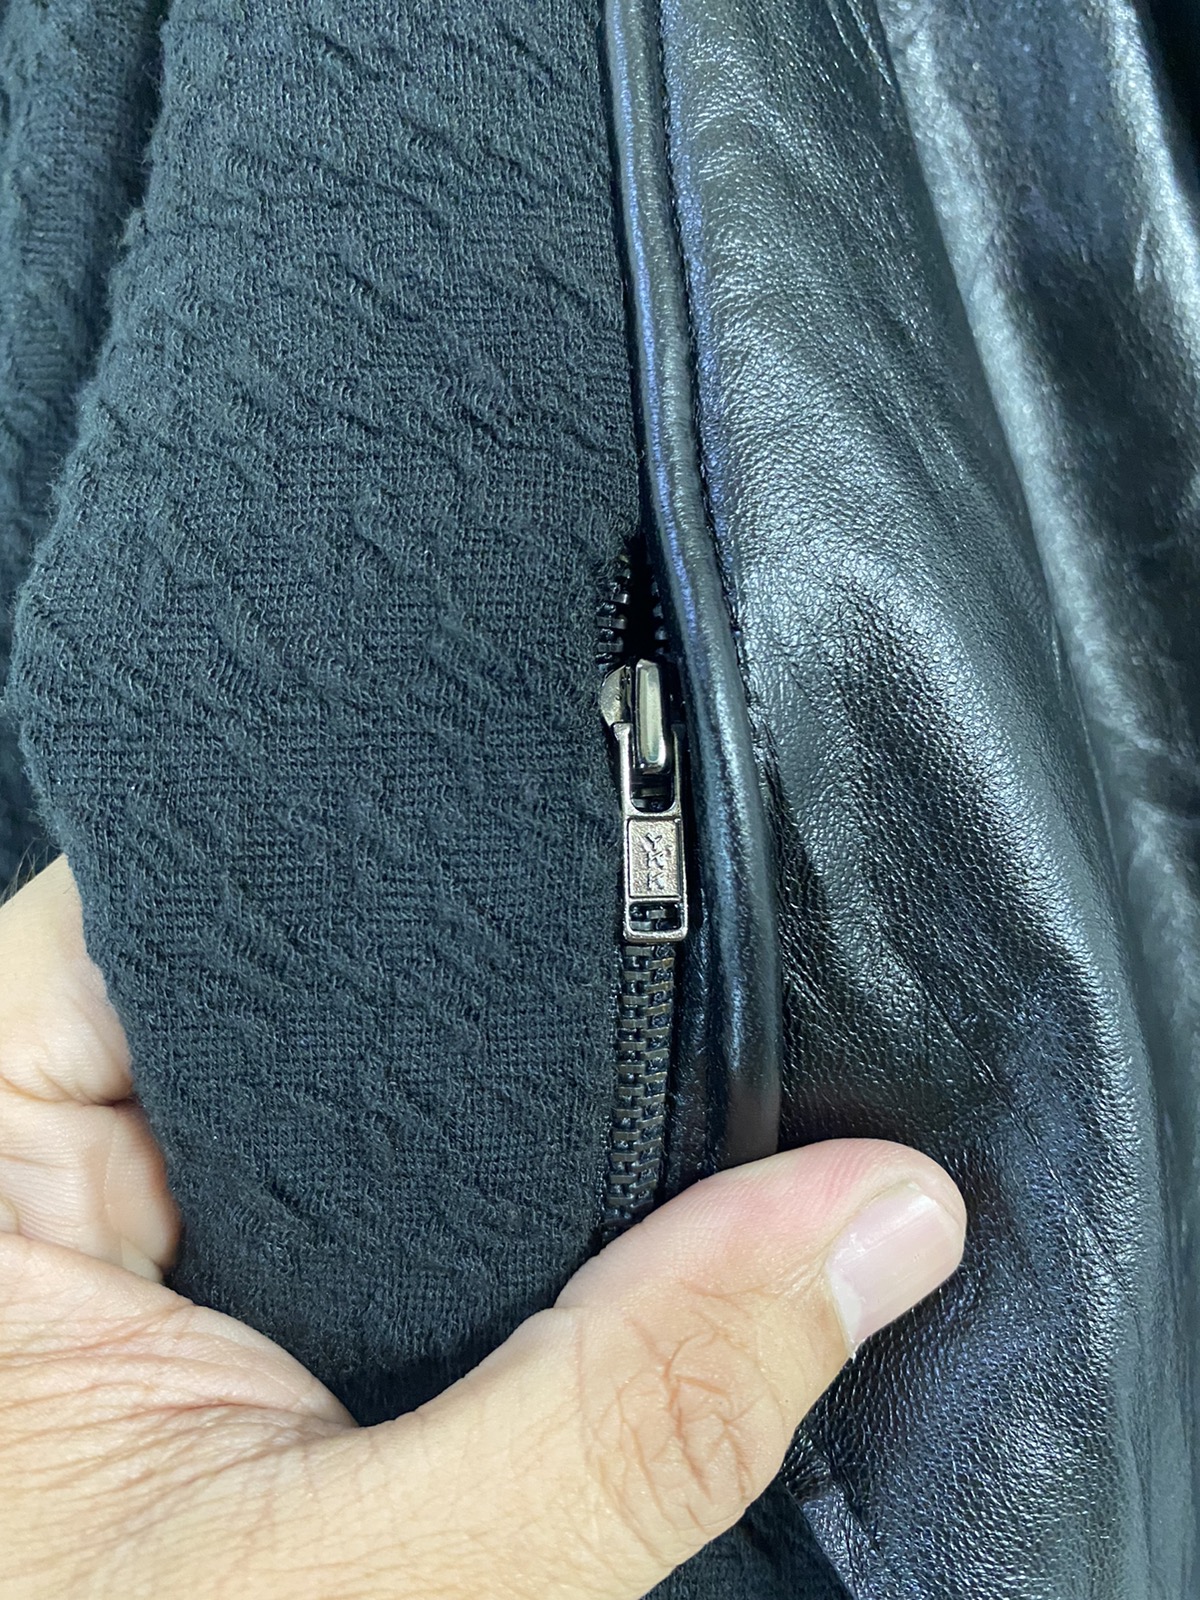 Helmut lang hybrid Leather Jacket Rare Design - 6